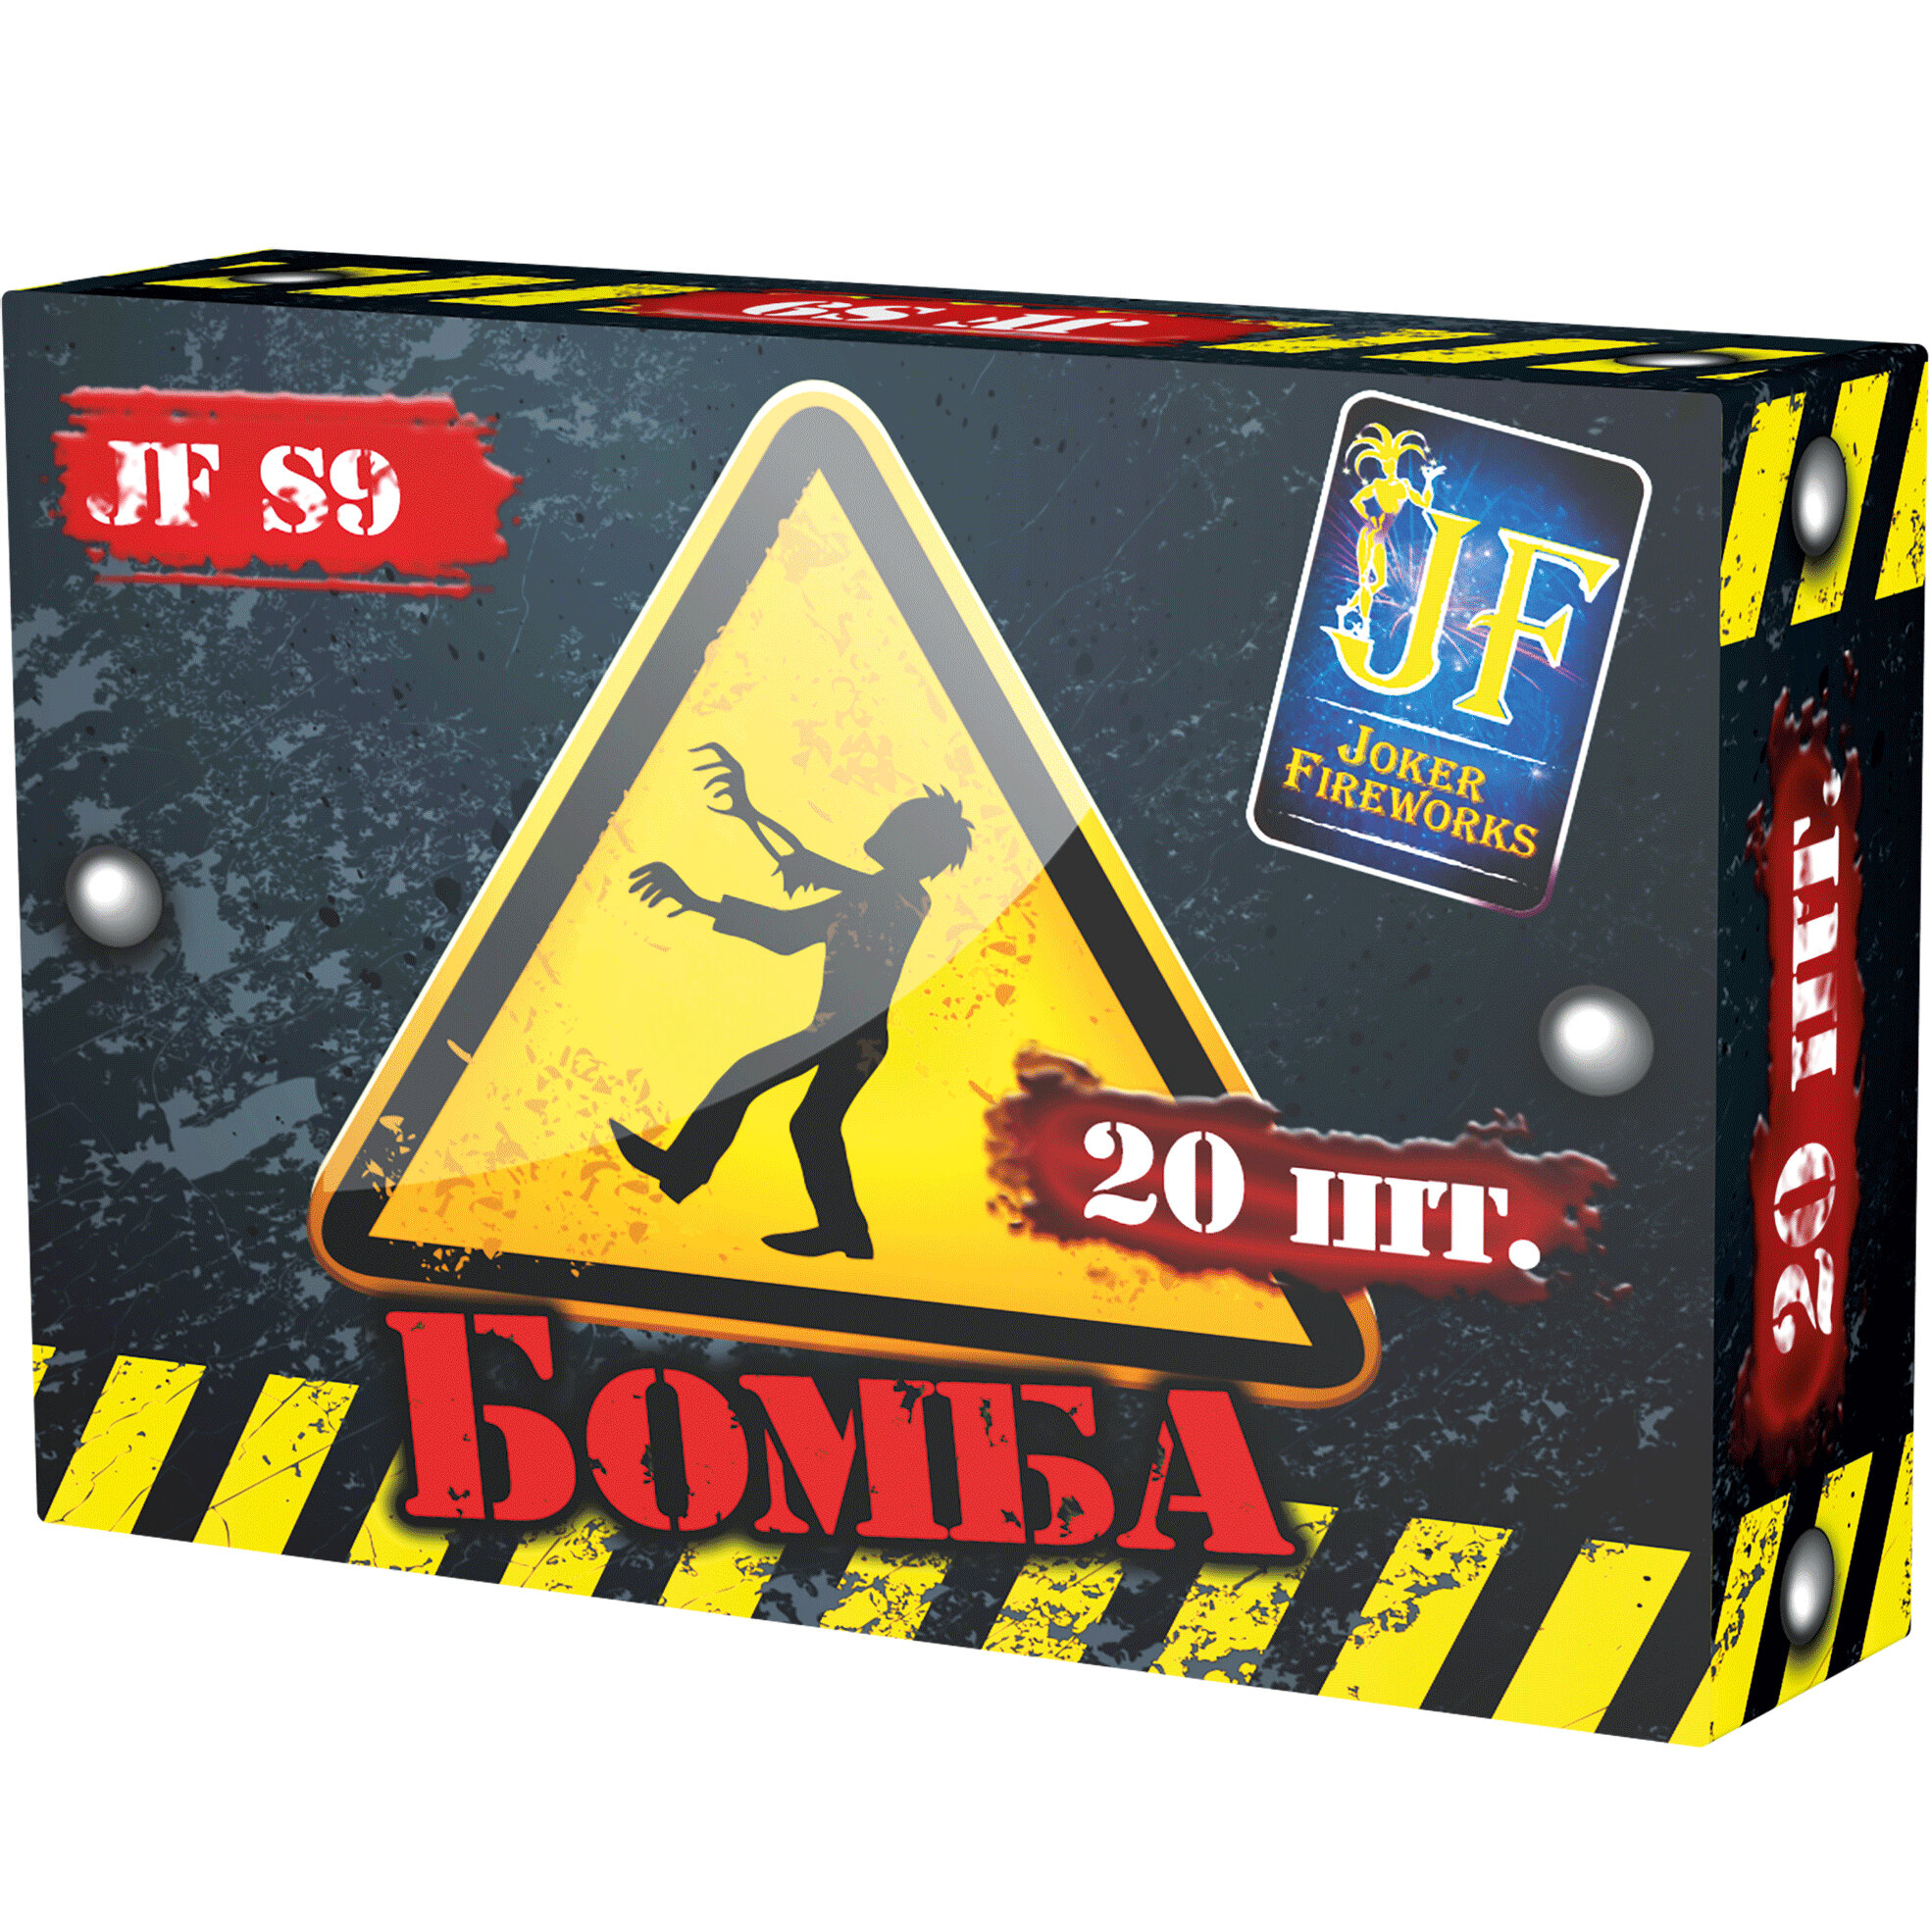 Петарды Joker Fireworks Бомба JF S9